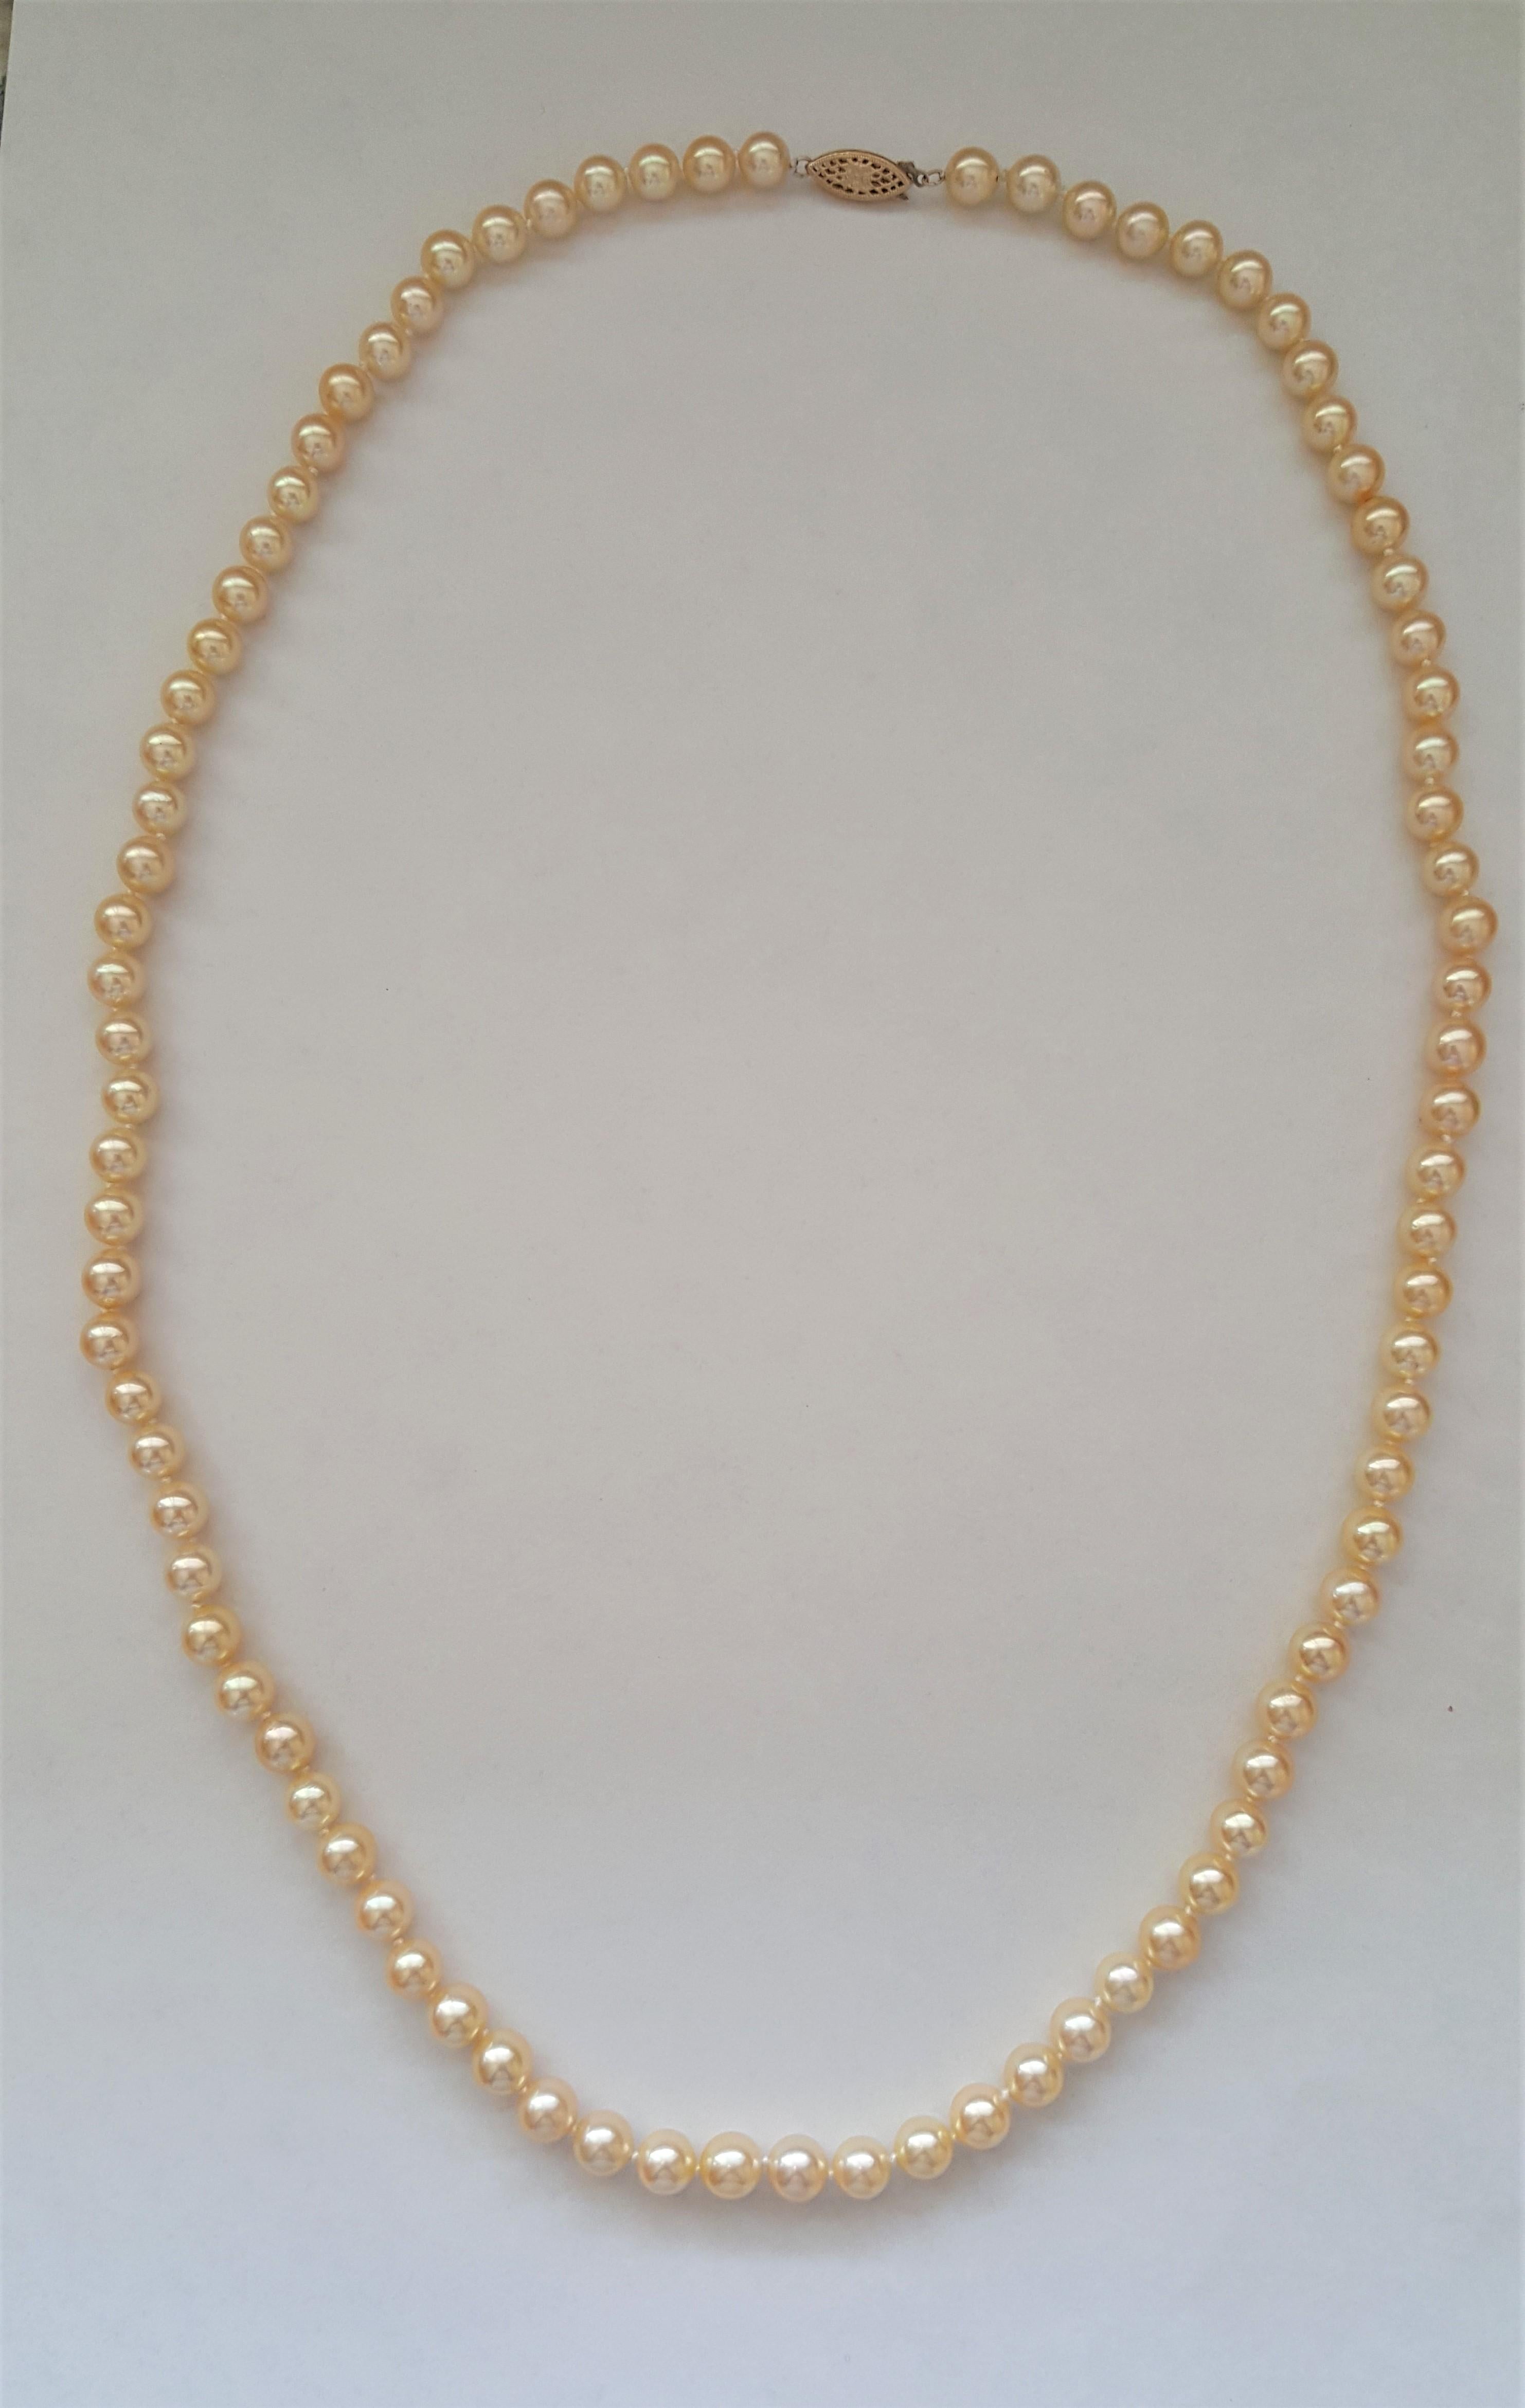 Une magnifique parure de perles de culture de catégorie AAA avec de riches perles en or crème d'une taille de 7+mm. Le collier mesure 27 pouces de long et est fixé par un fermoir en perles filigranes en or jaune 14k, estampillé. Le bracelet est doté